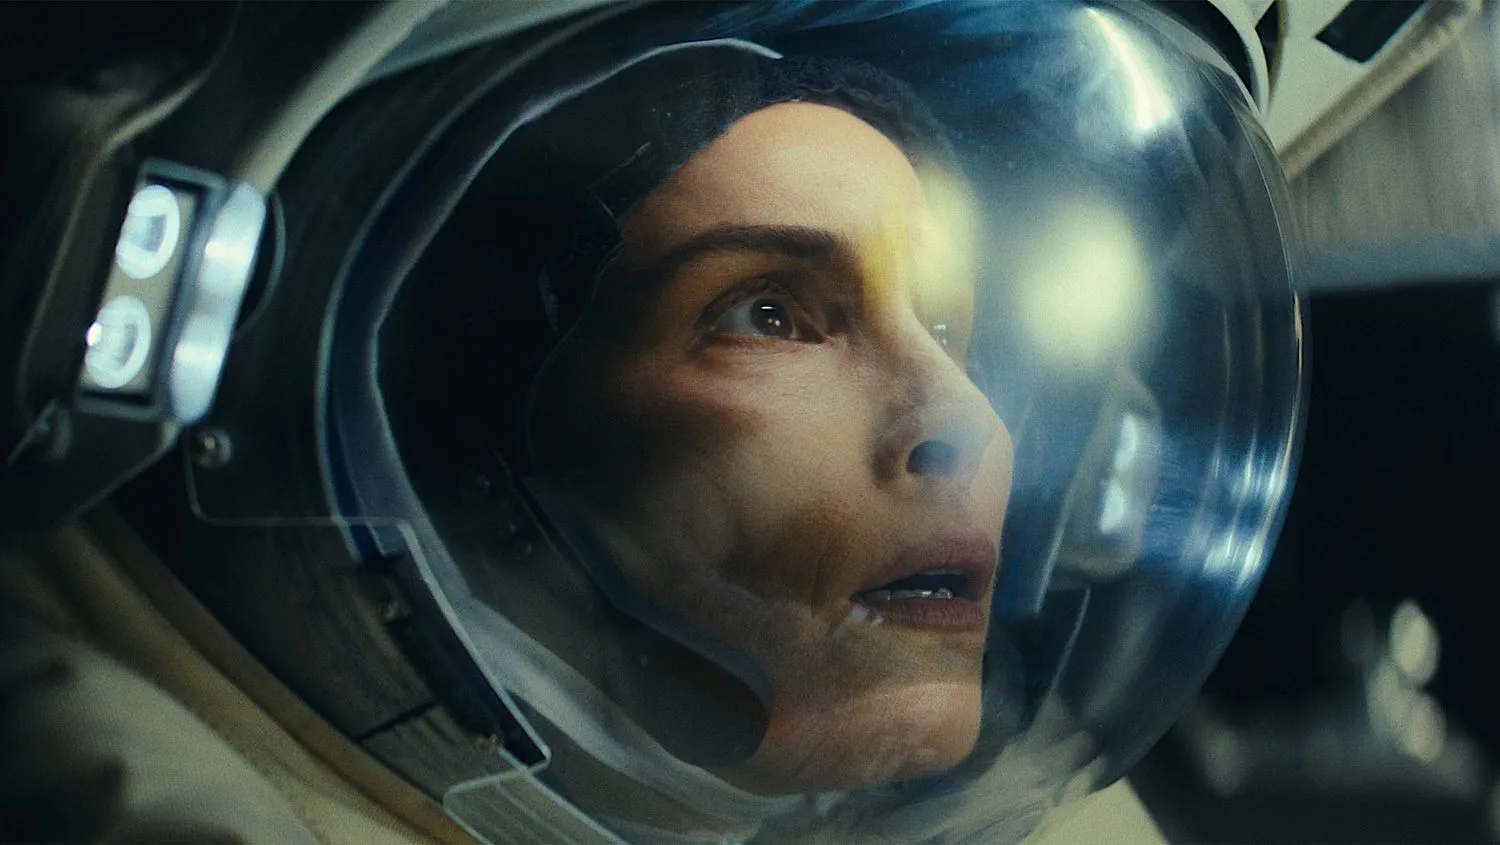 eine Frau in einem Astronautenhelm sieht verängstigt aus